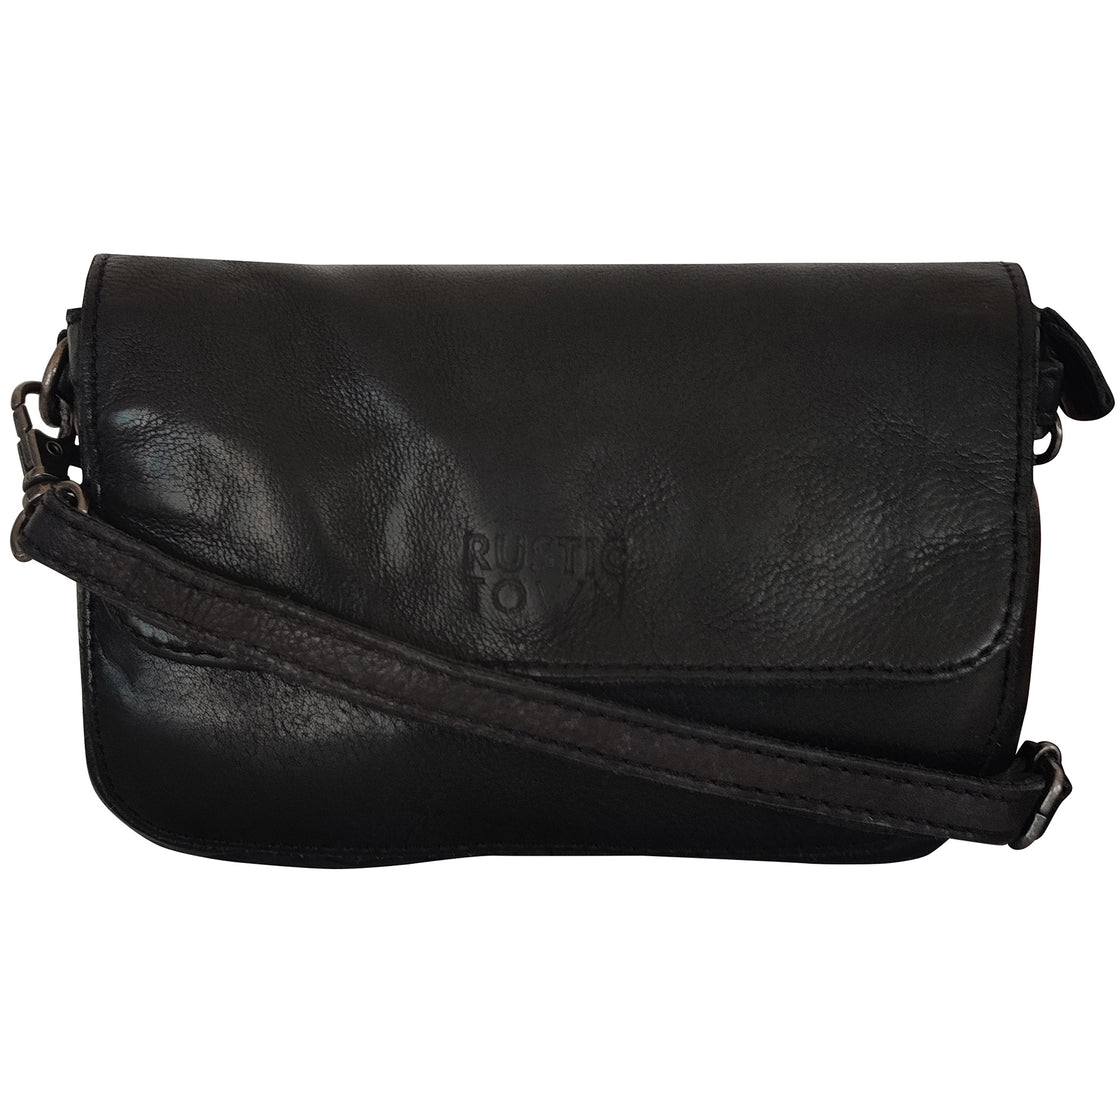 Women's leather black belly bag, women's leather shoulder bag